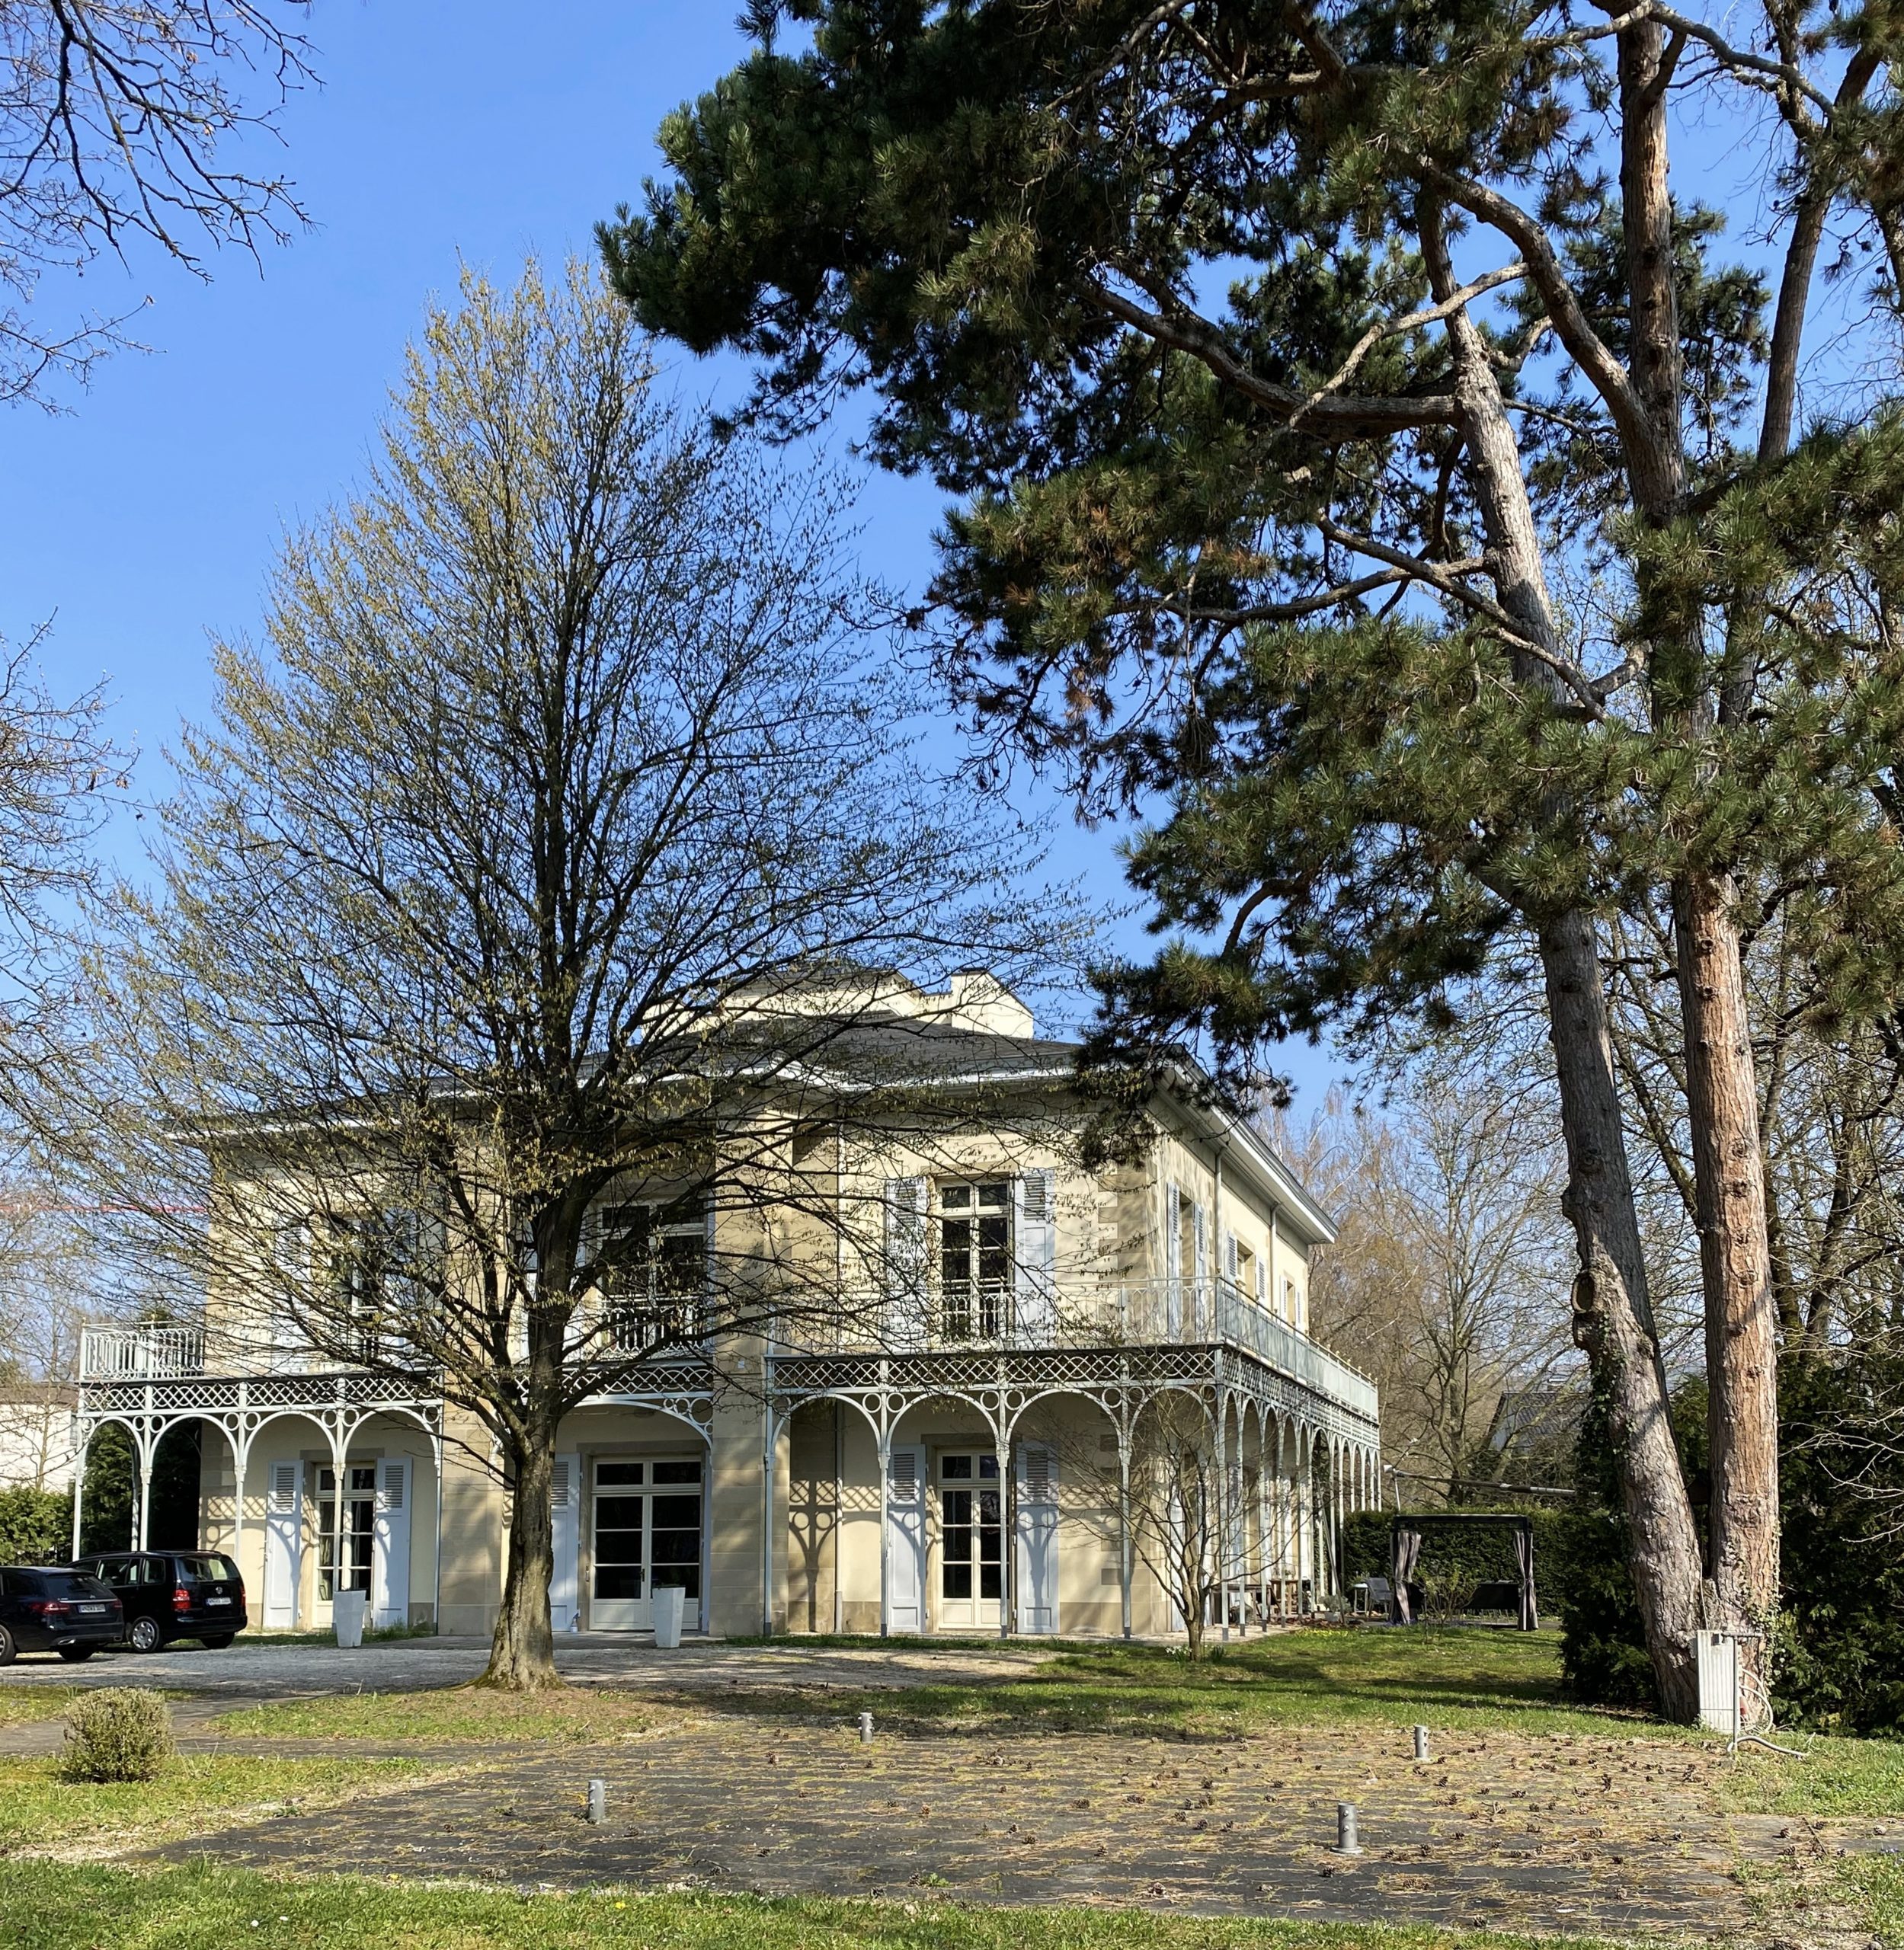 Schlösschen Weil bei Esslingen: Landhaus, Pavillon, Villa oder Schlösschen zur Auswahl